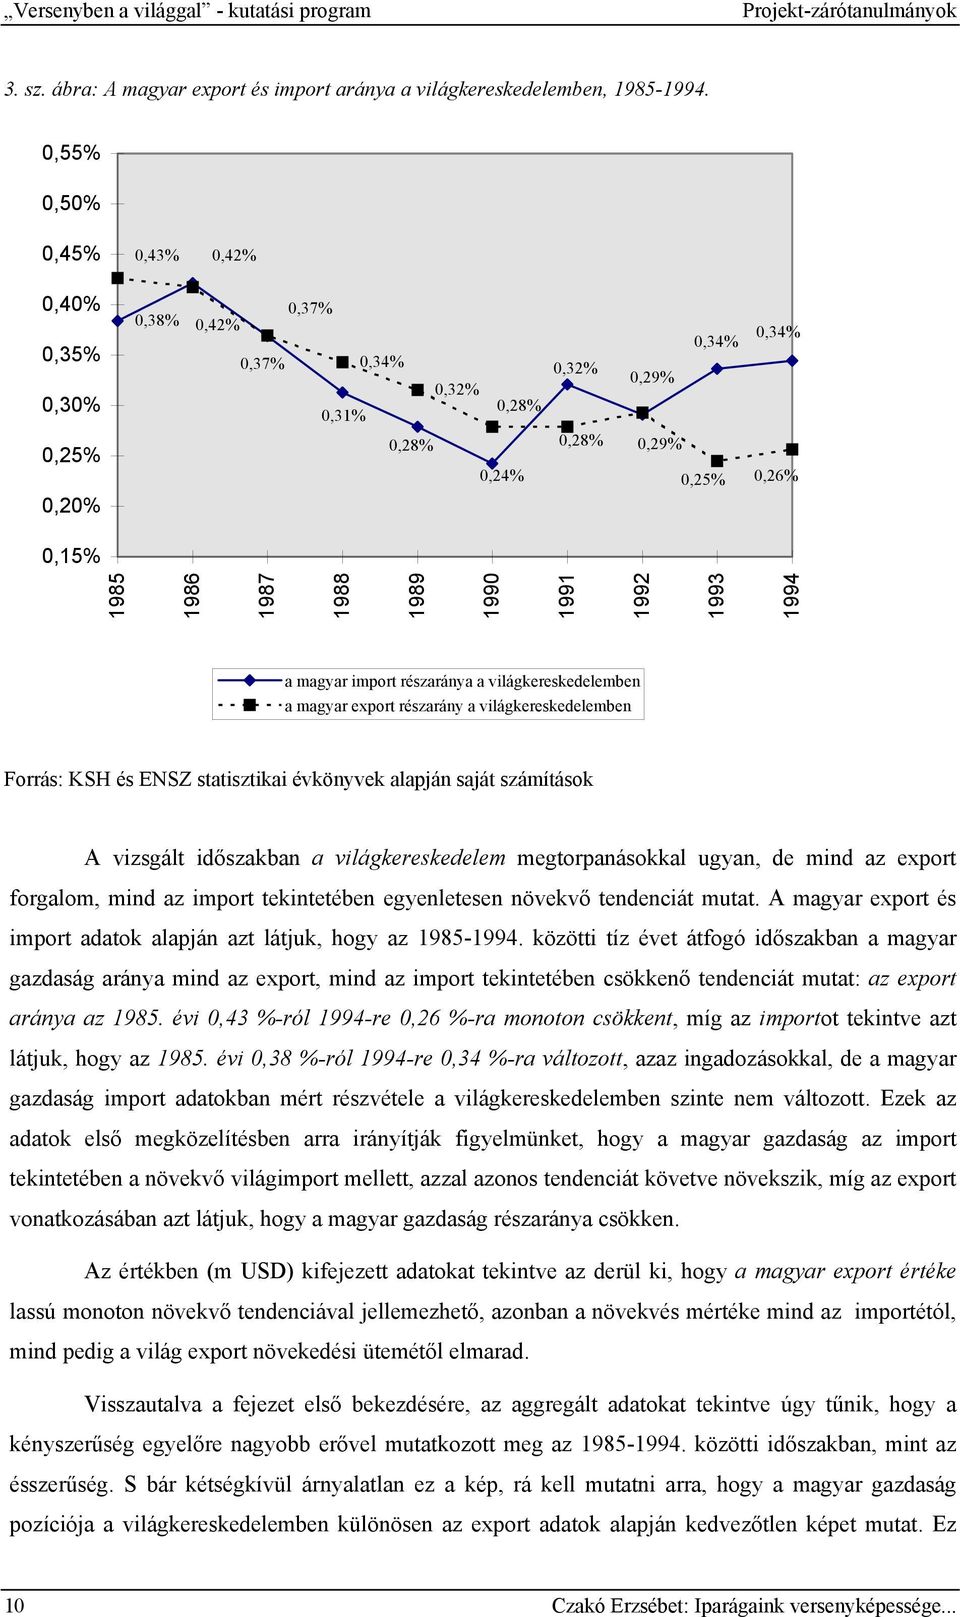 1990 1991 1992 1993 1994 a magyar import részaránya a világkereskedelemben a magyar export részarány a világkereskedelemben Forrás: KSH és ENSZ statisztikai évkönyvek alapján saját számítások A